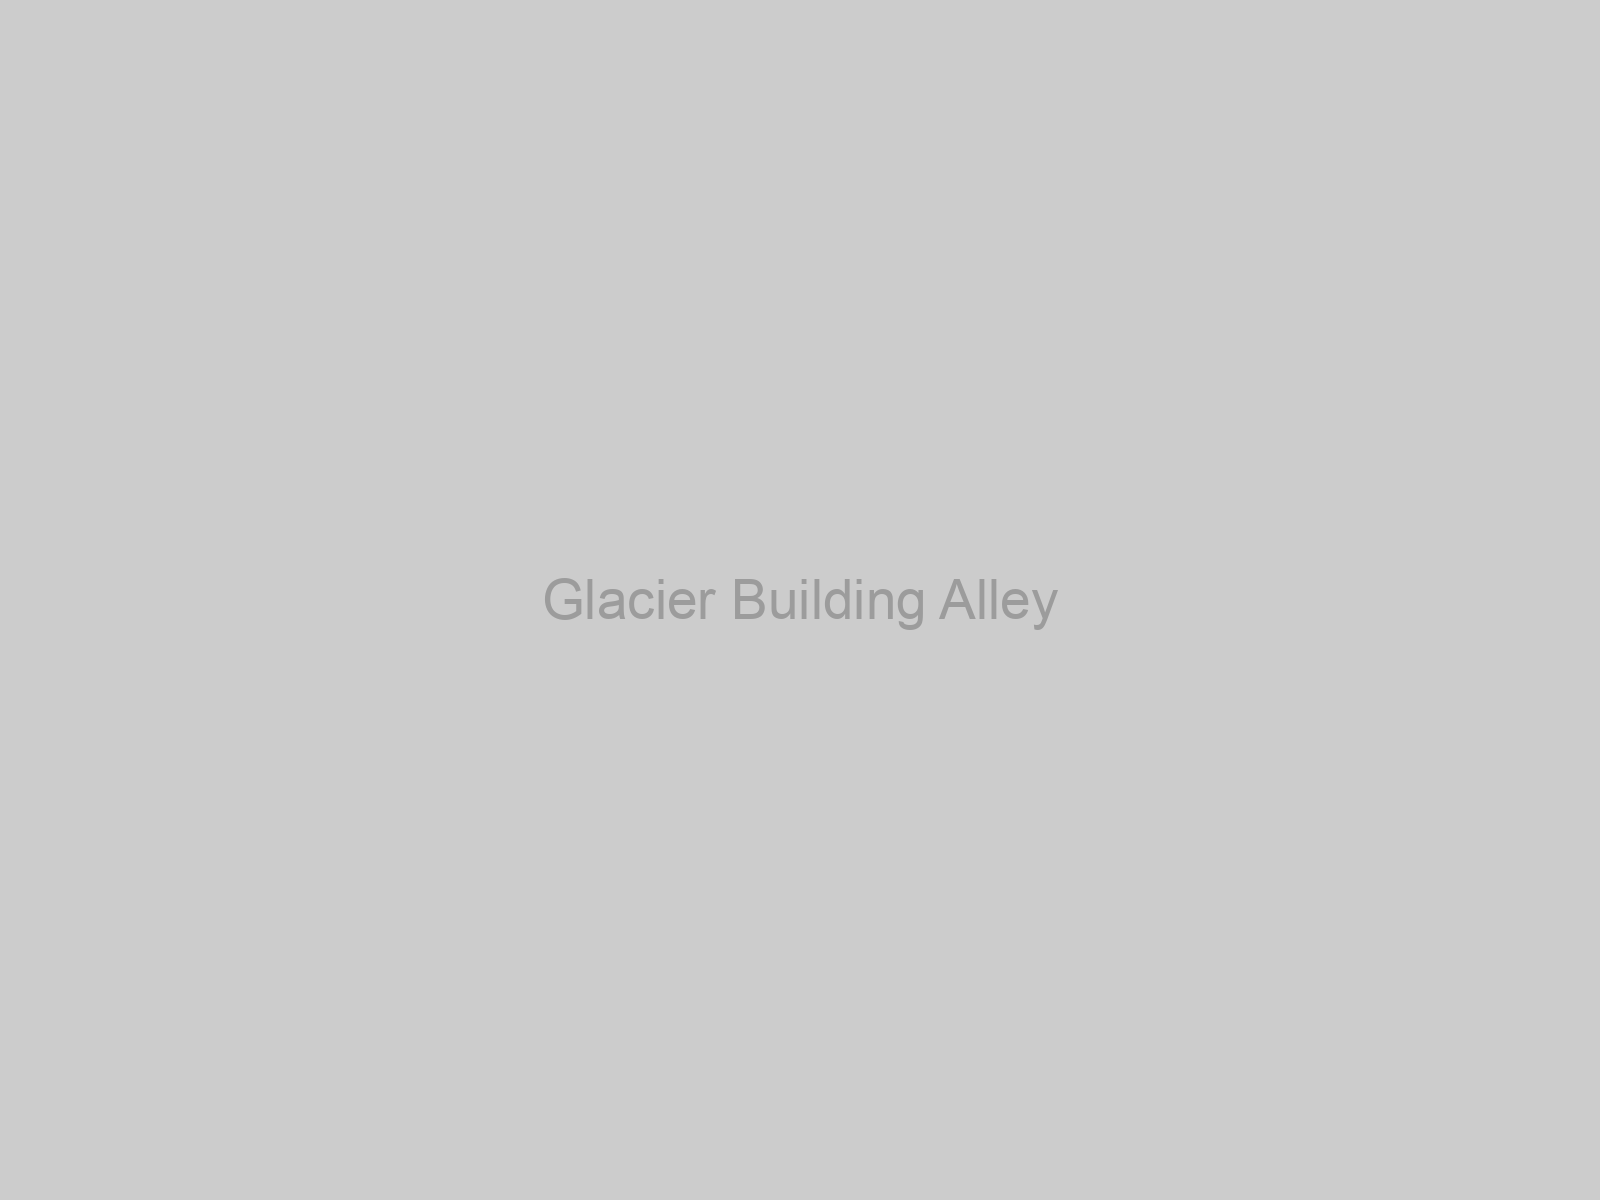 Glacier Building Alley